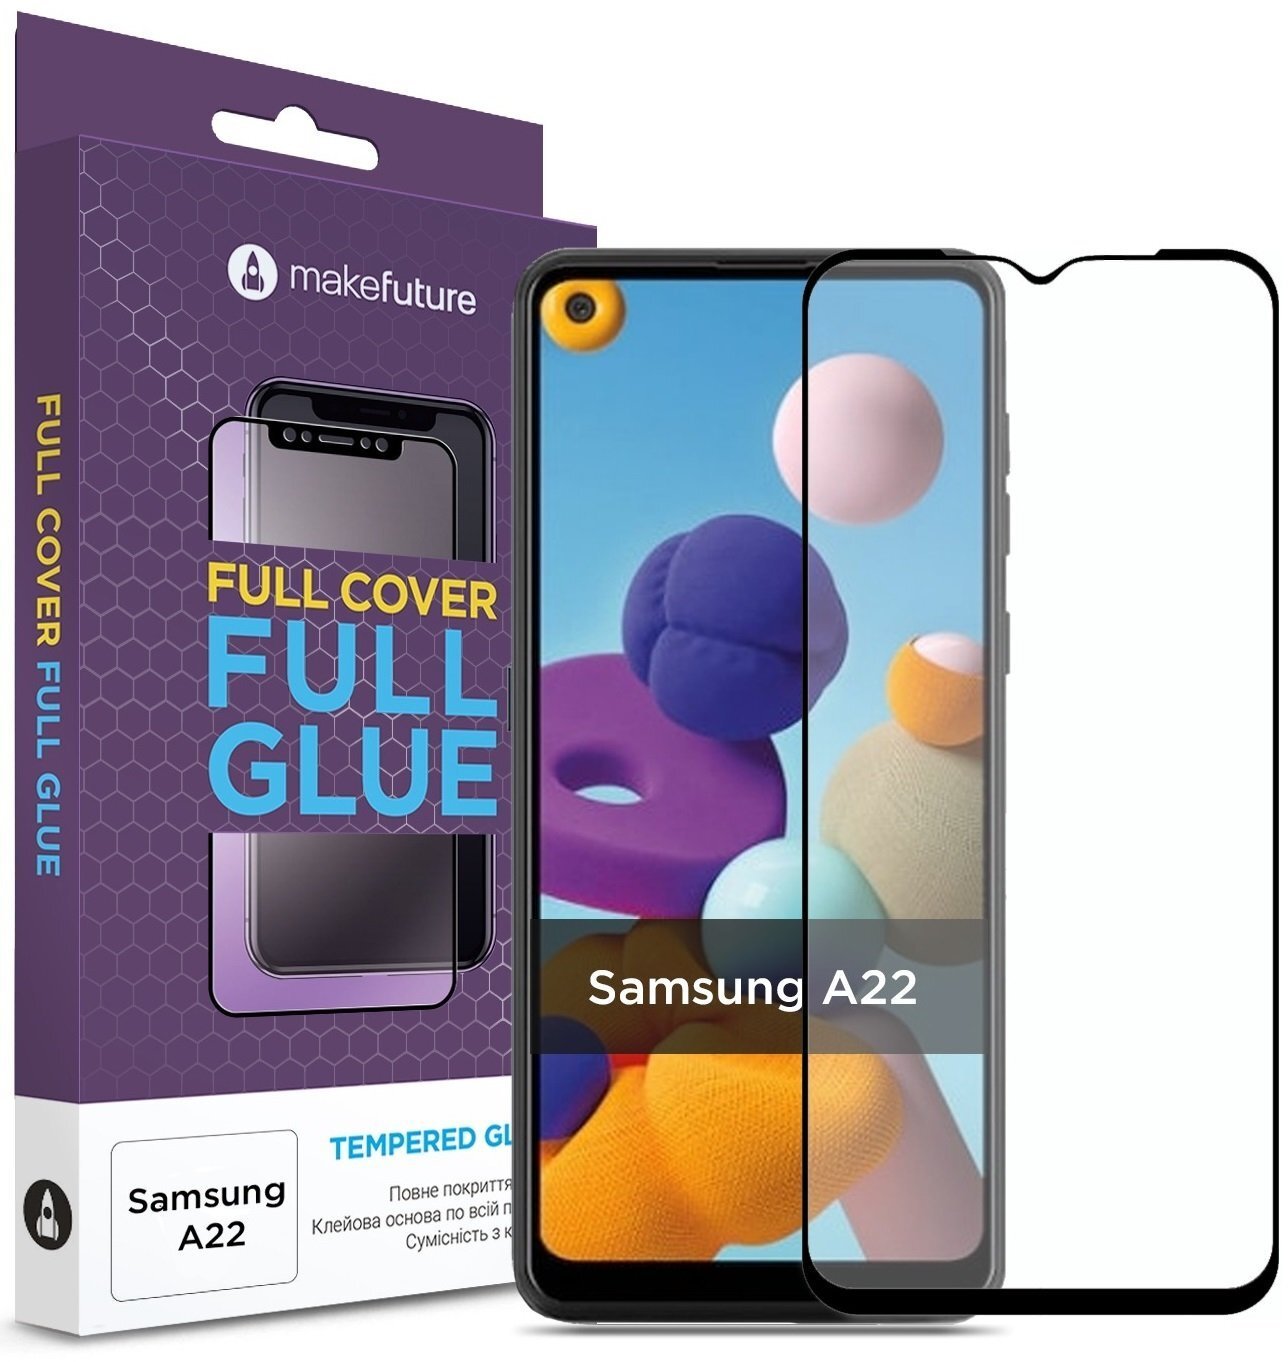 Защитное стекло MakeFuture для Galaxy A22 Full Cover Full Glue (MGF-SA22) фото 